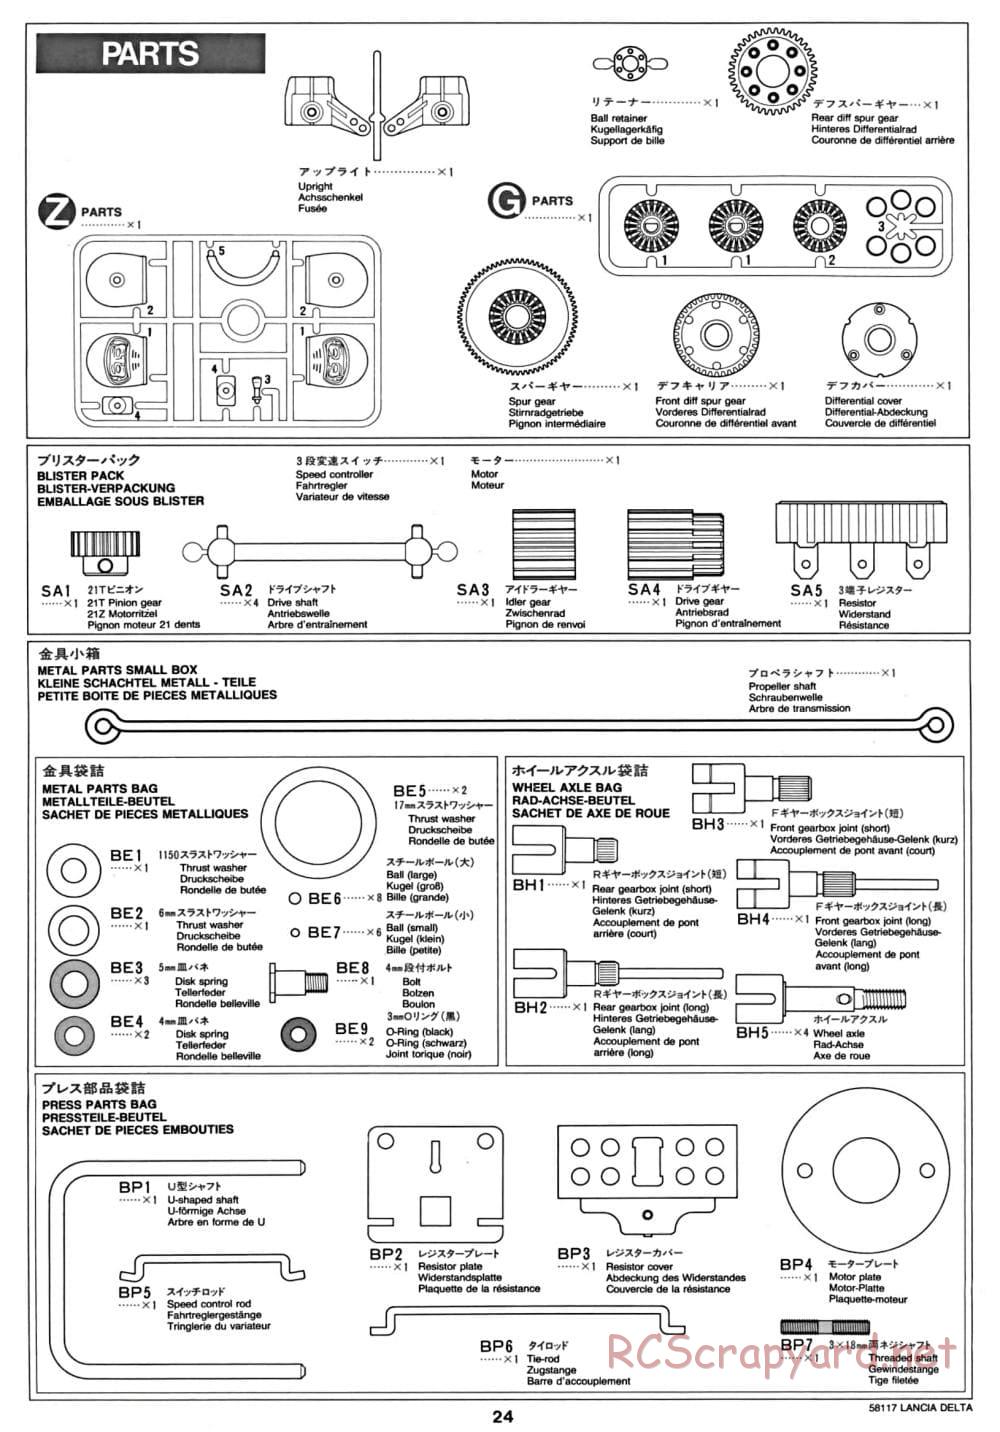 Tamiya - Lancia Delta HF Integrale - TA-01 Chassis - Manual - Page 25